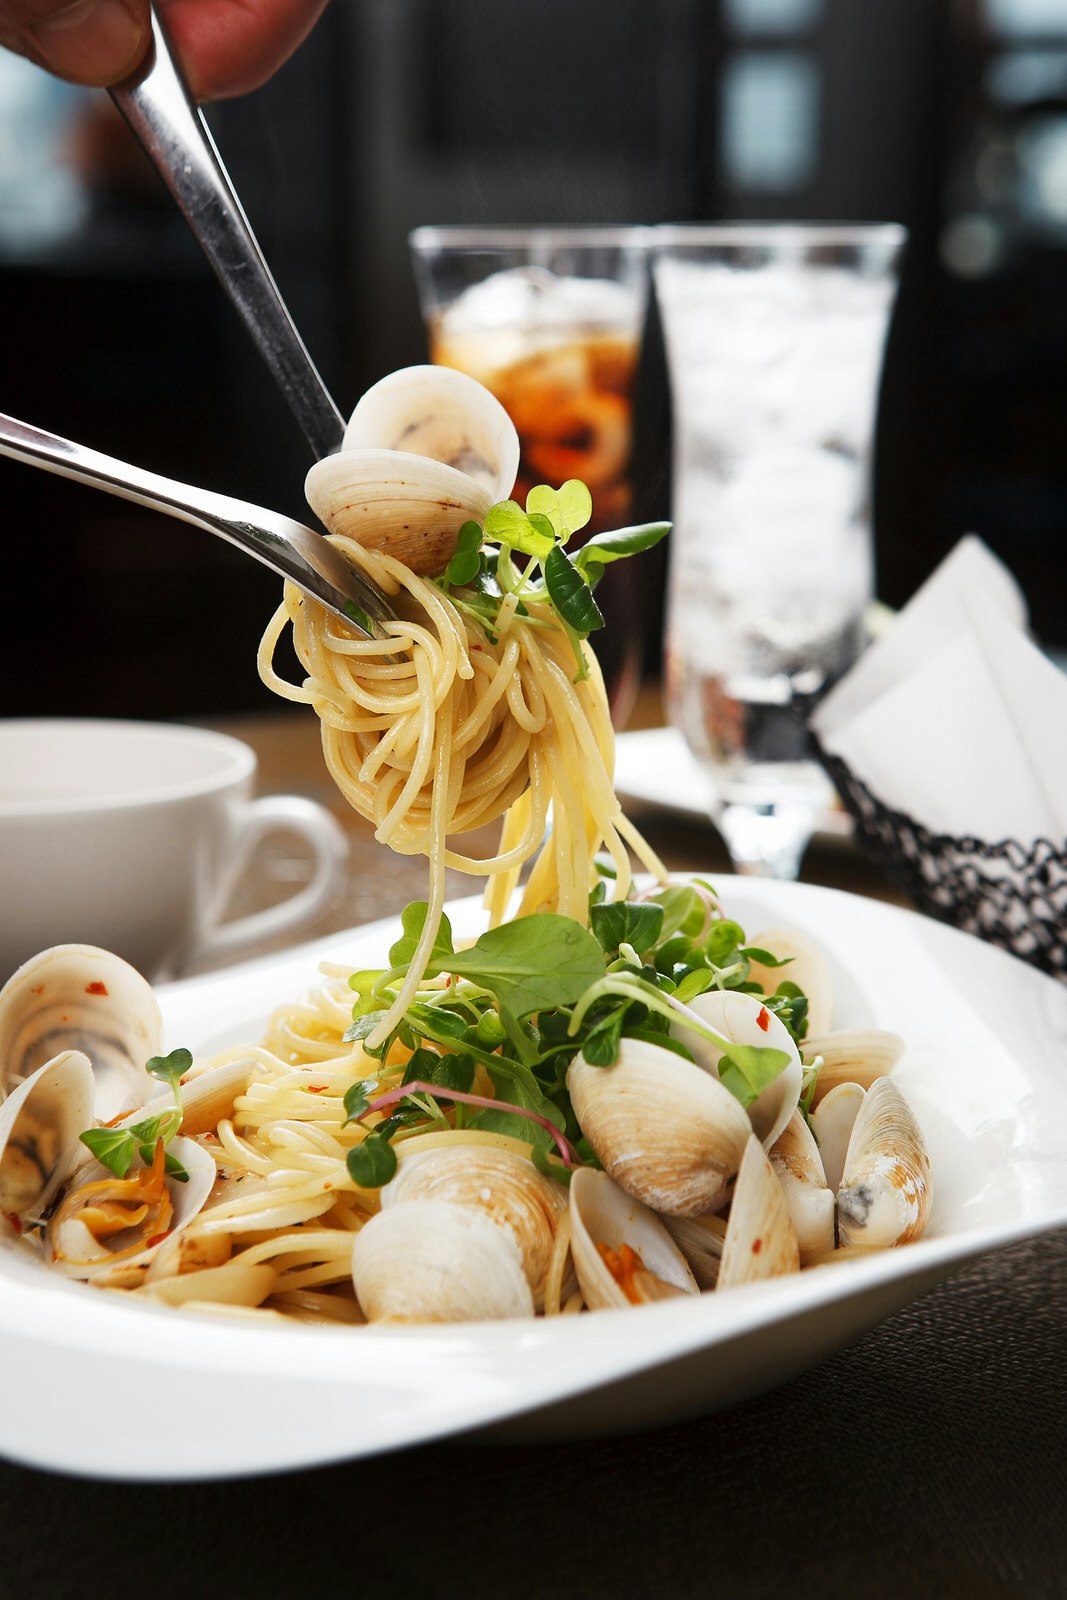 En närbild av lite spaghetti alle vongole som vrids på en gaffel från en vit maträtt.  Det finns färska örter, musslor och en lätt sås på en pastabädd.